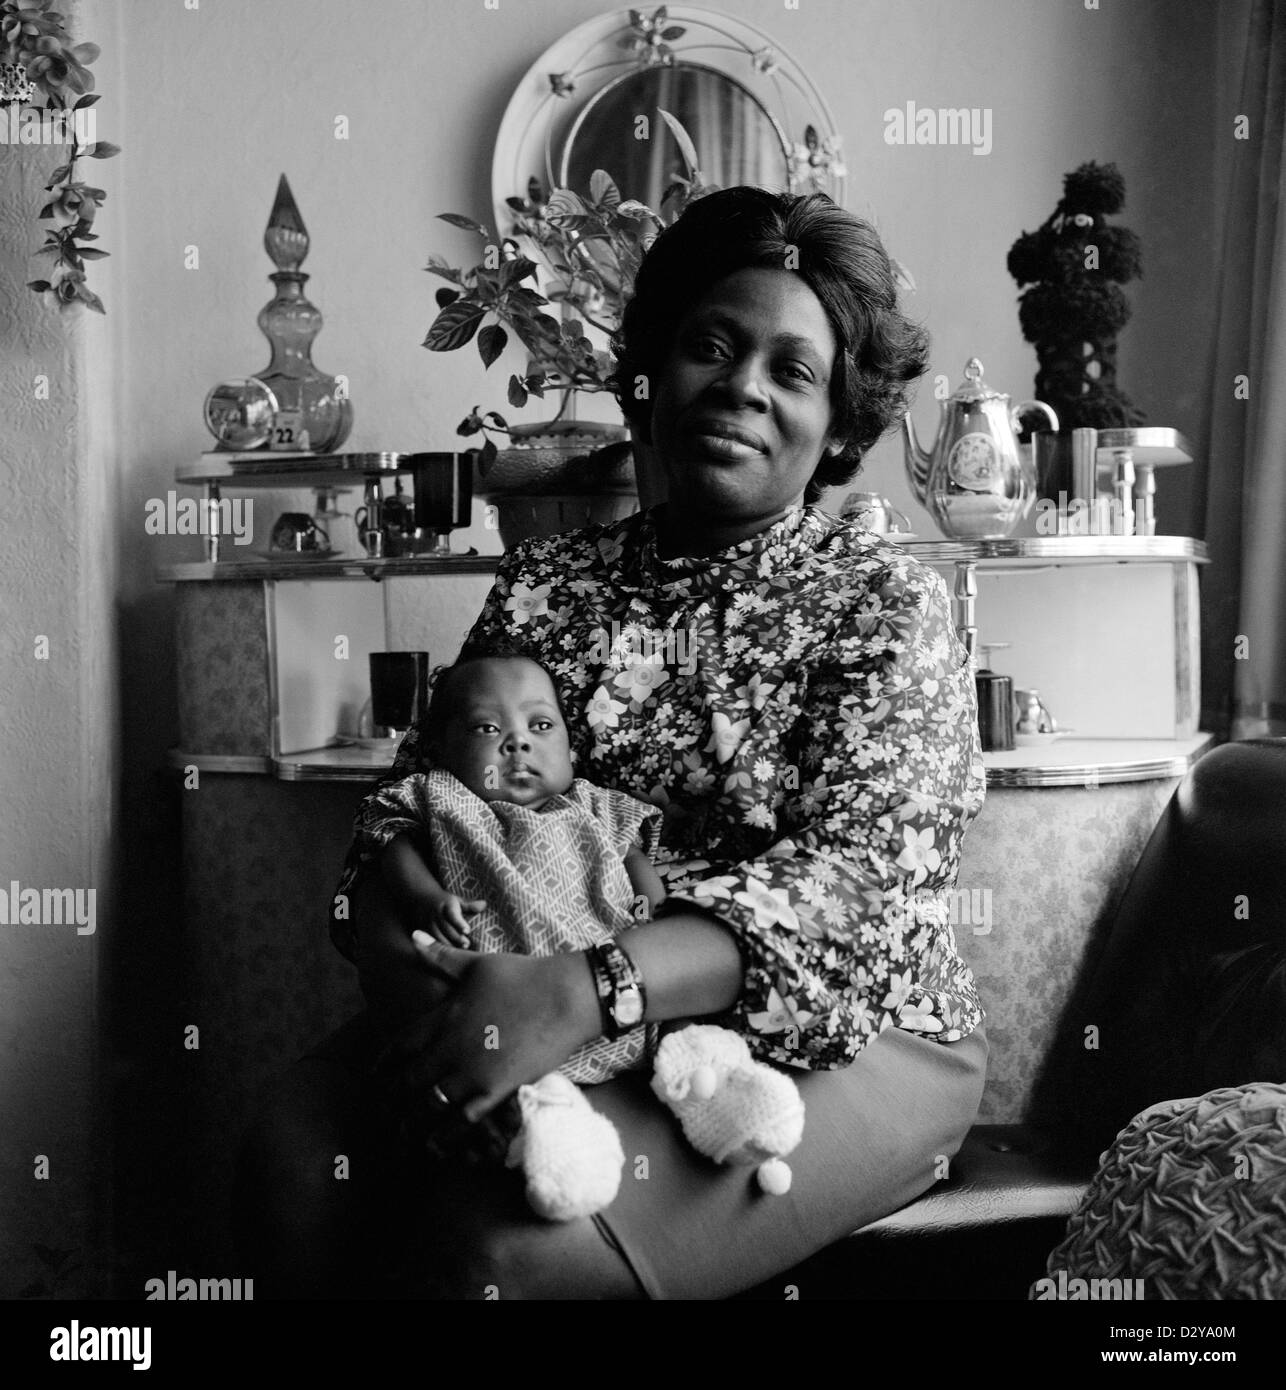 Porträt einer wunderschönen, stolzen afro-karibischen britischen Mutter (Familie Roper), die ihr kleines Baby in ihrem Wohnzimmer in Leeds West Yorkshire England Großbritannien 1970er 1974 KATHY DEWITT hielt Stockfoto